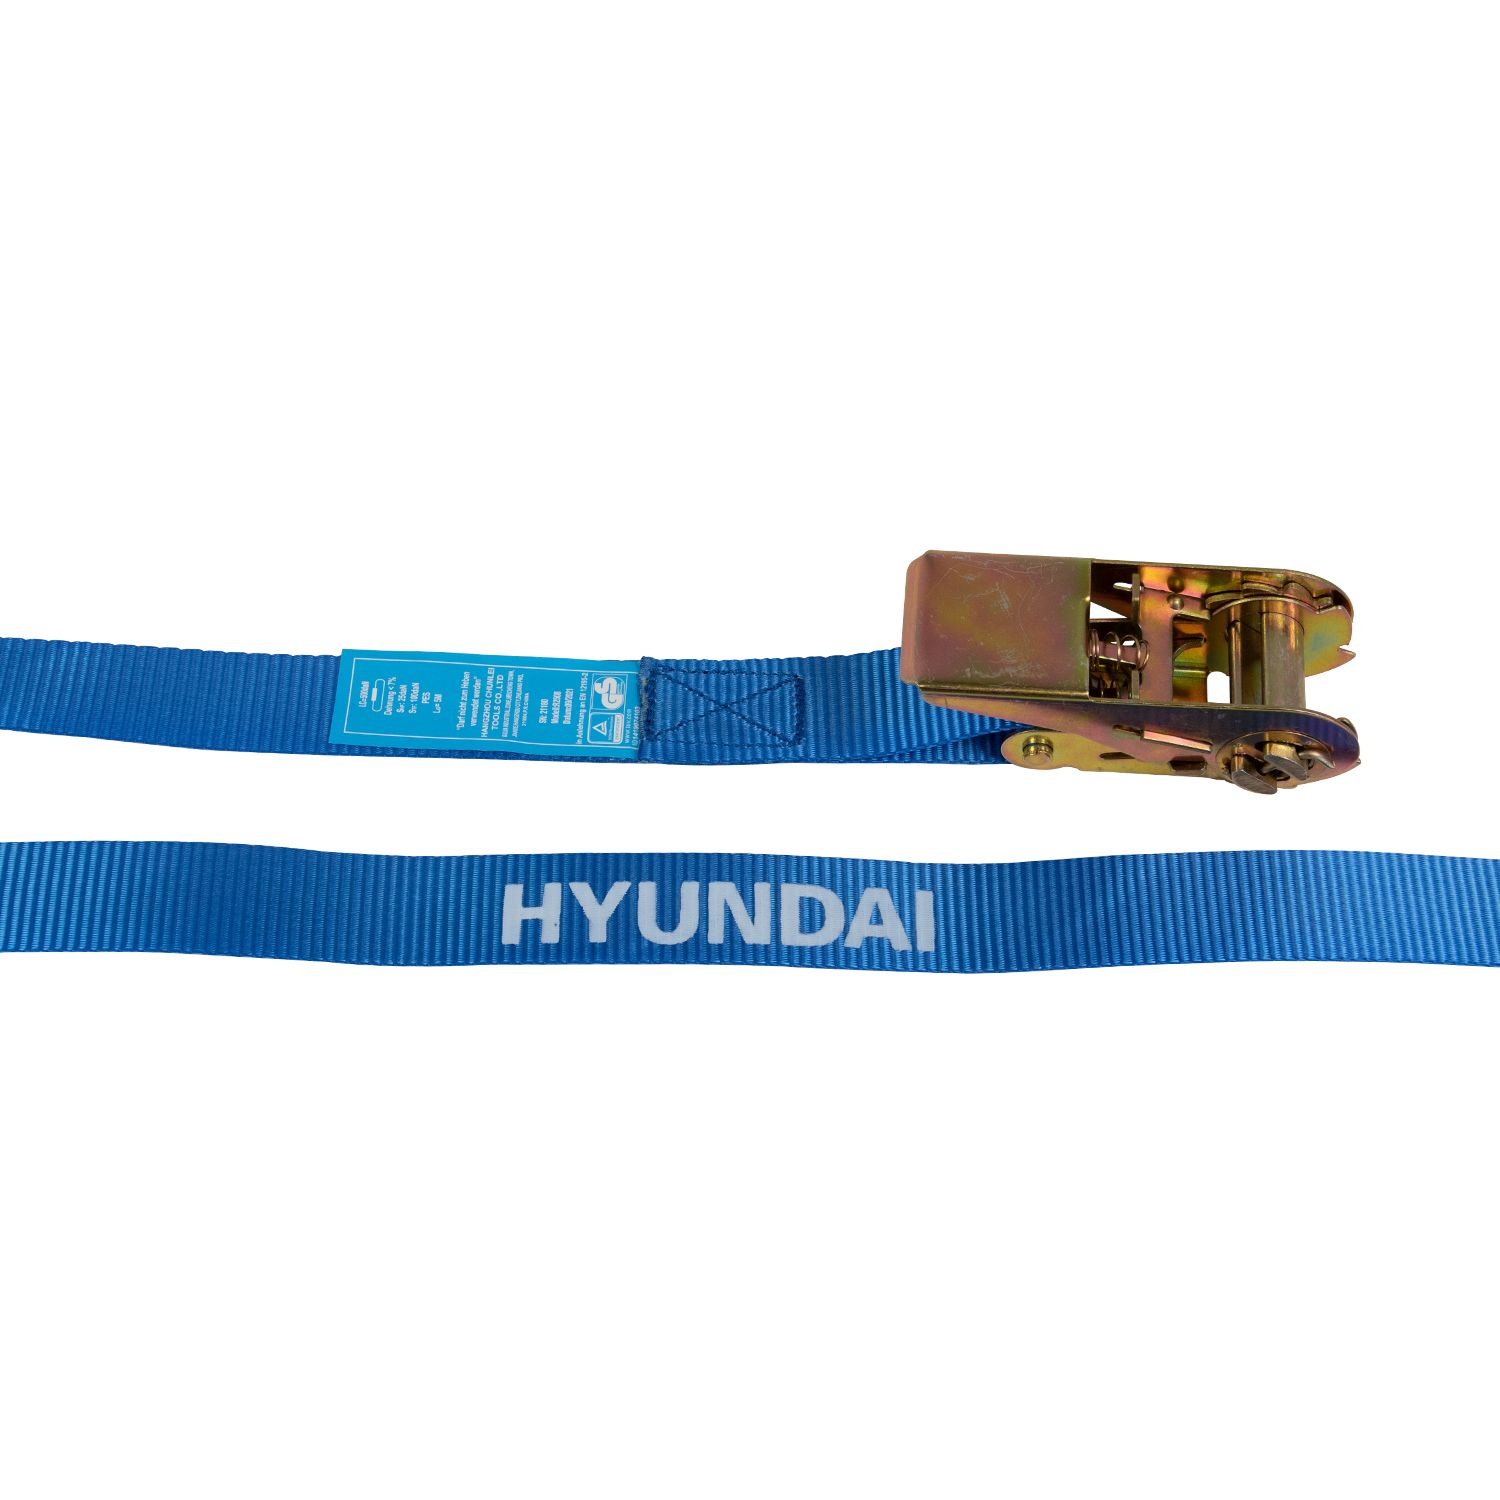 Hyundai spanband met ratel 28mmx5m